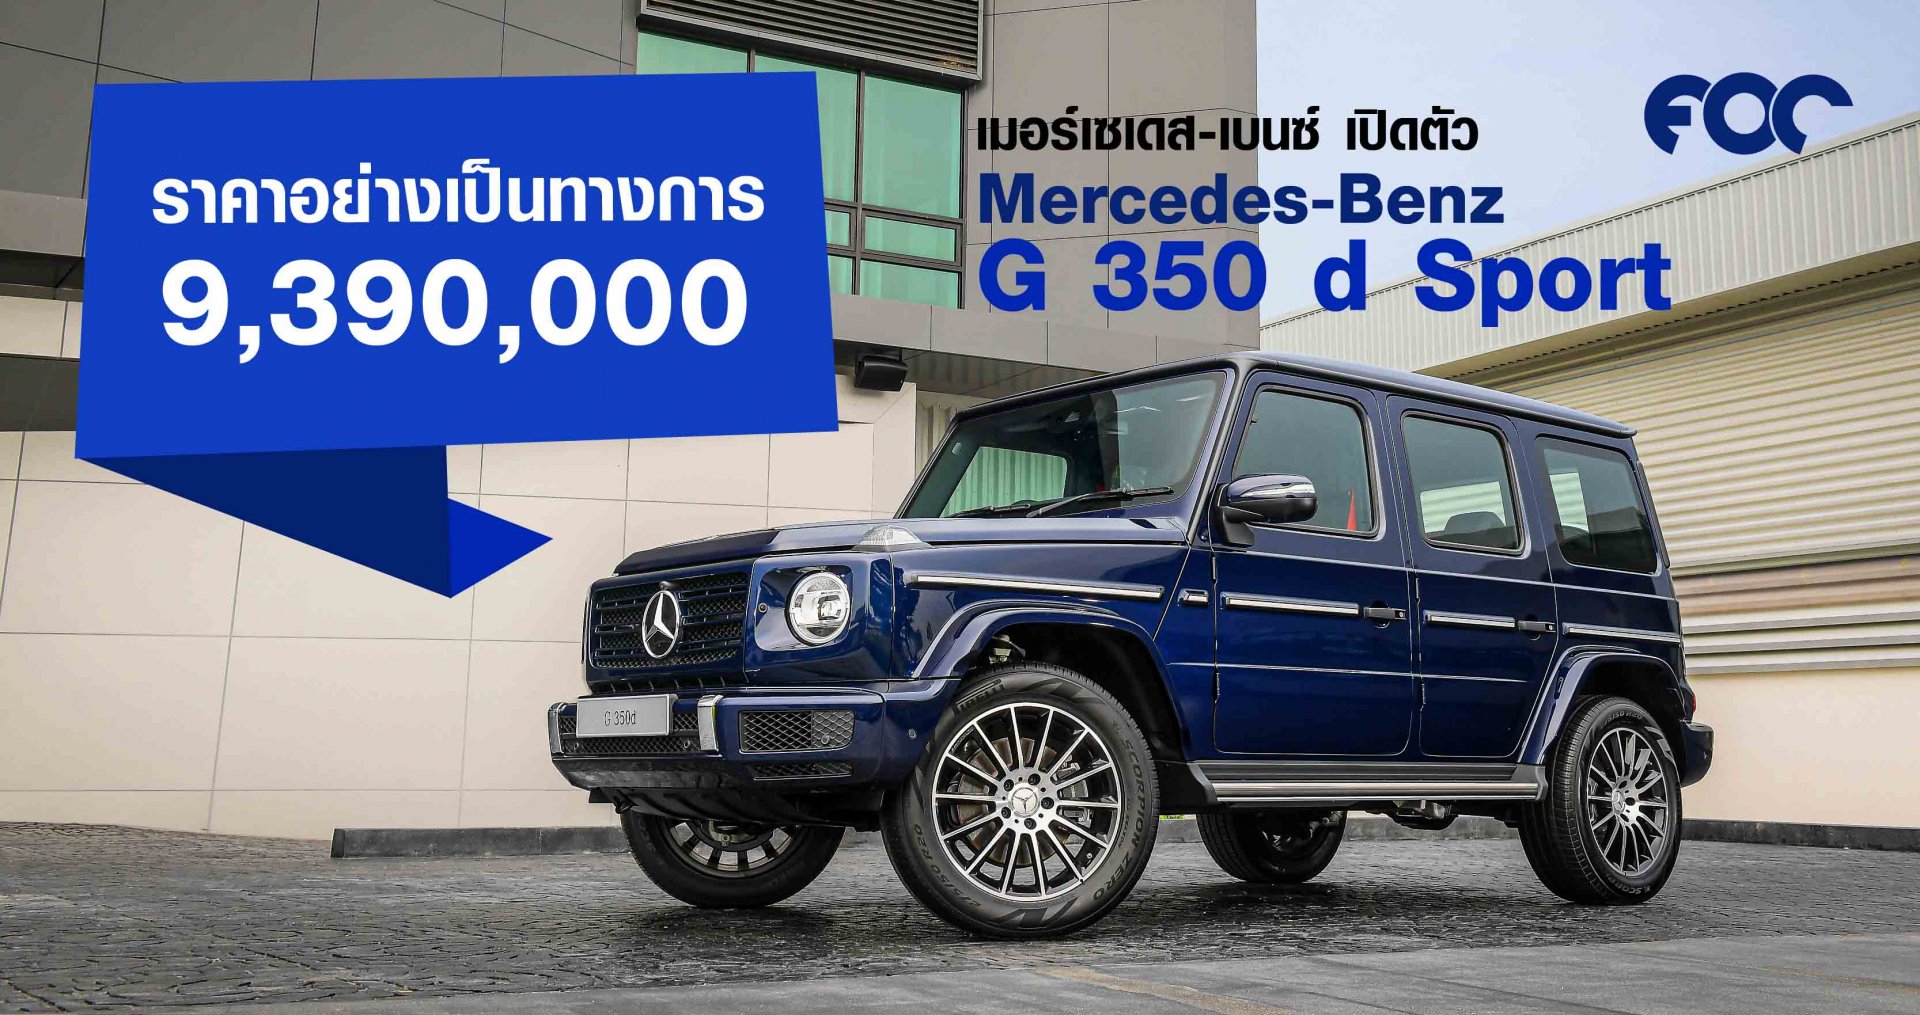 Mercedes-Benz G 350 d Sport ราคาอย่างเป็นทางการ 9,390,000 บาท   